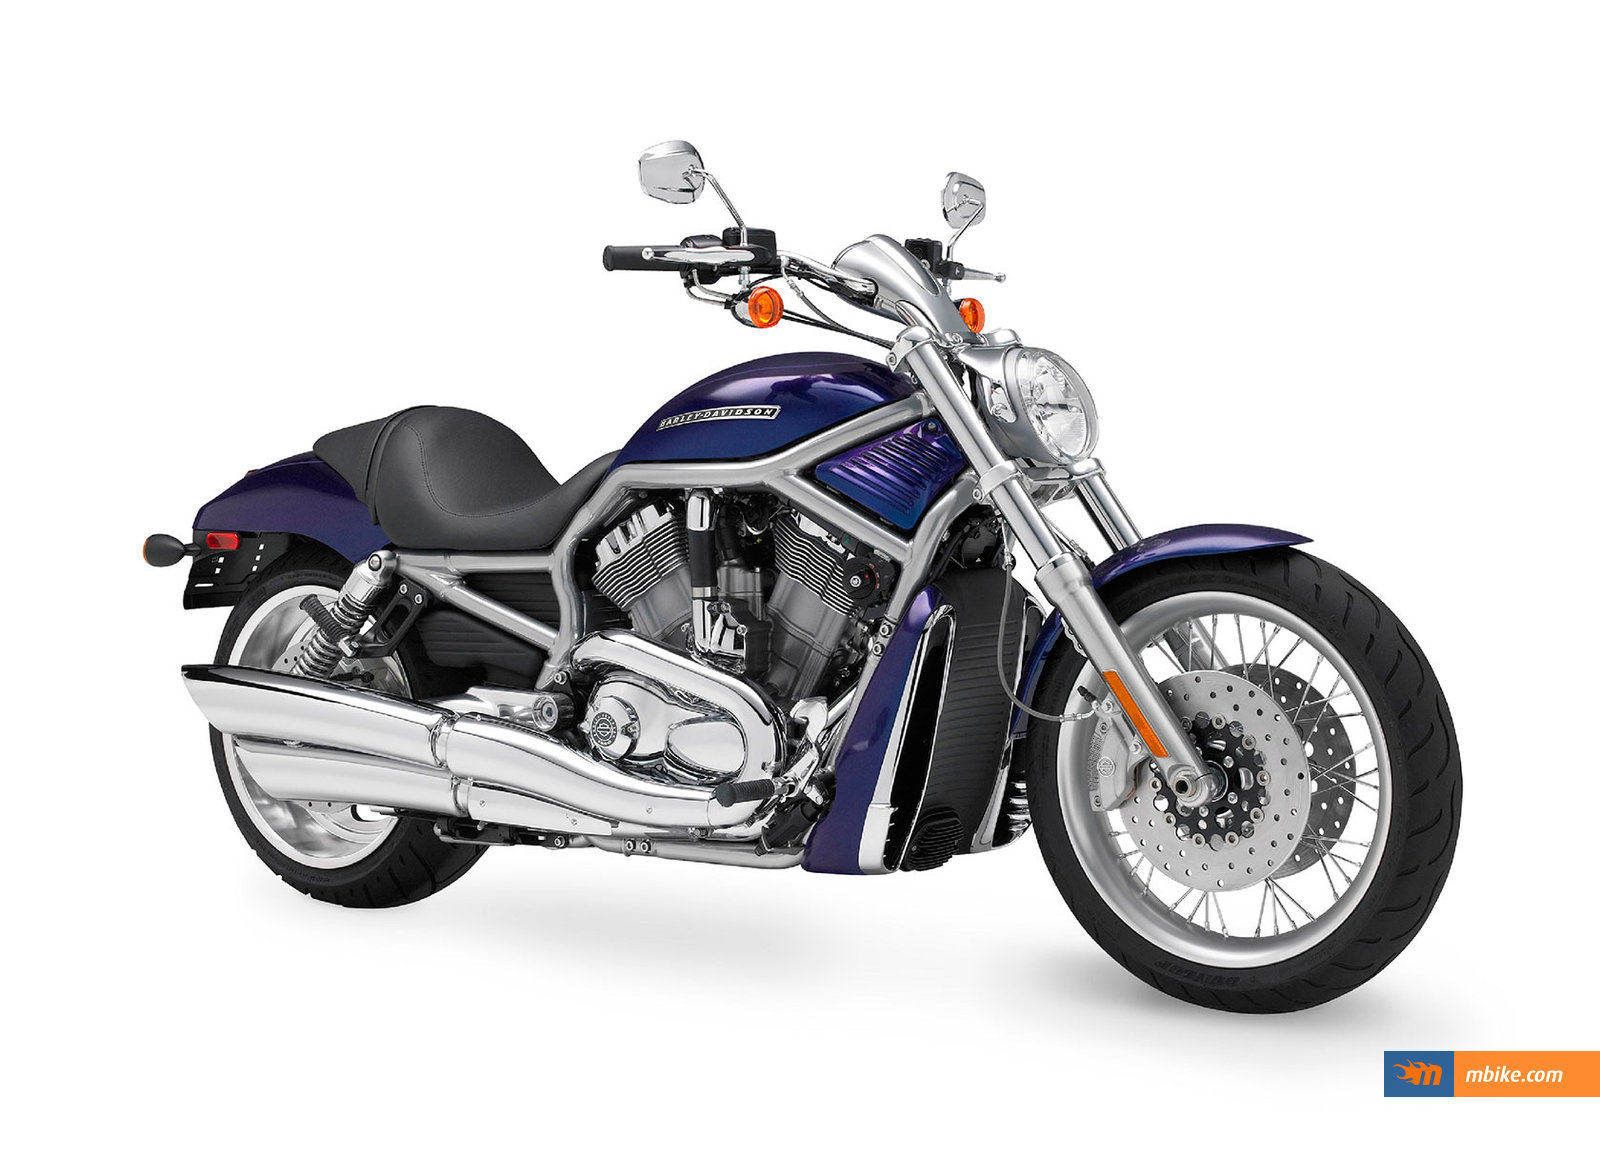 2010 Harley-Davidson VRSCAW V-Rod